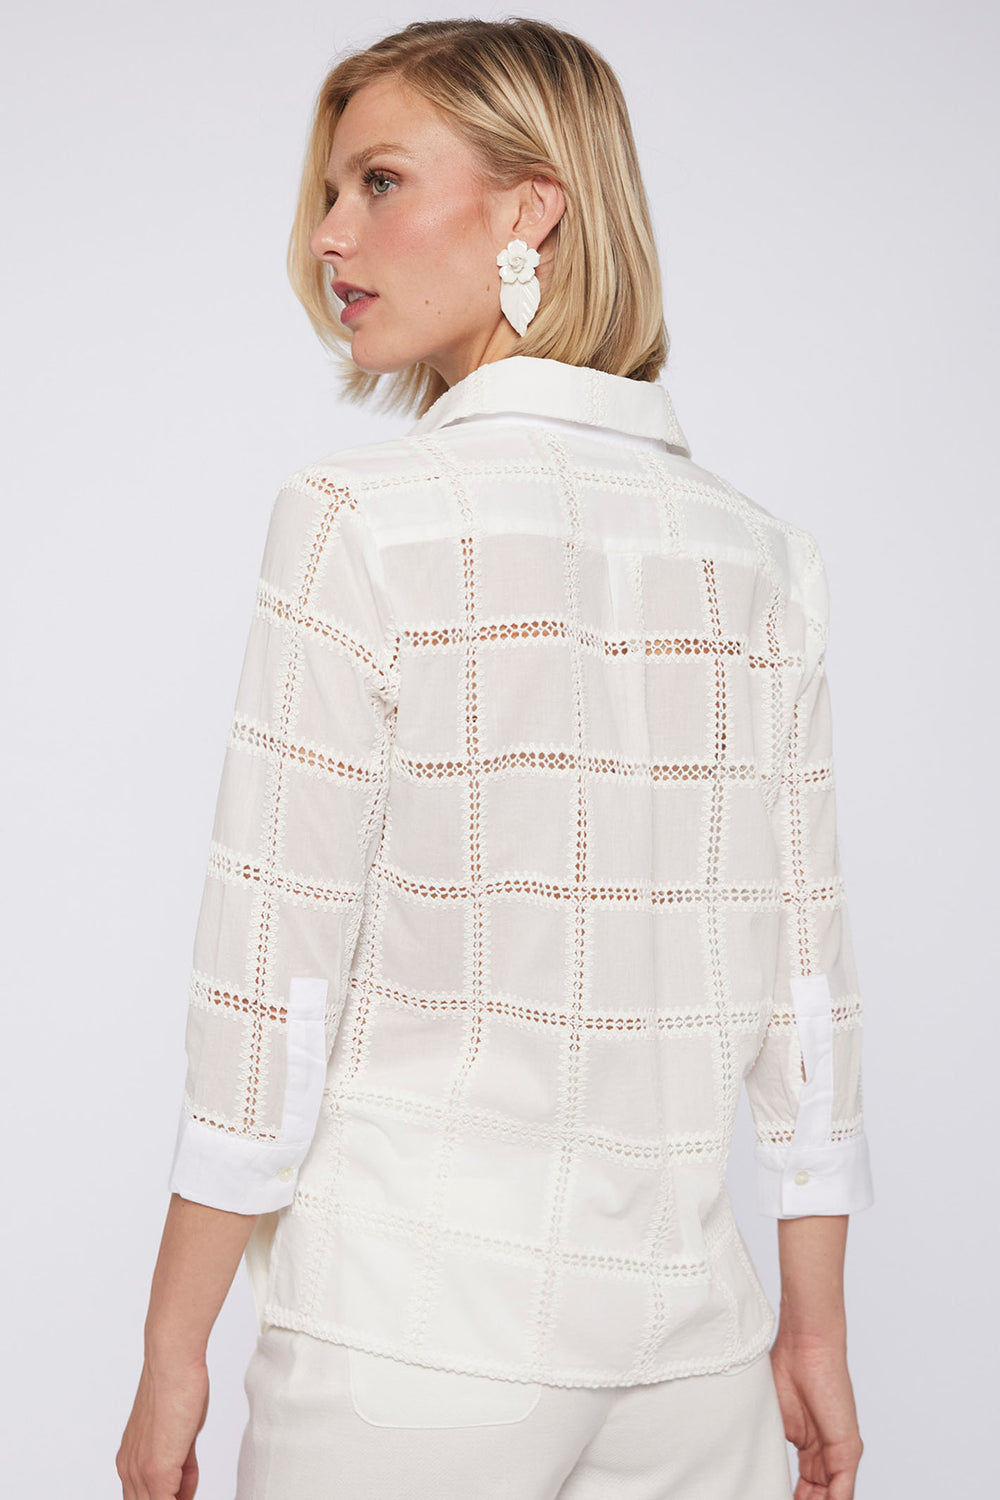 Vilagallo 31279 White Embroidered Square Shirt - Olivia Grace Fashion